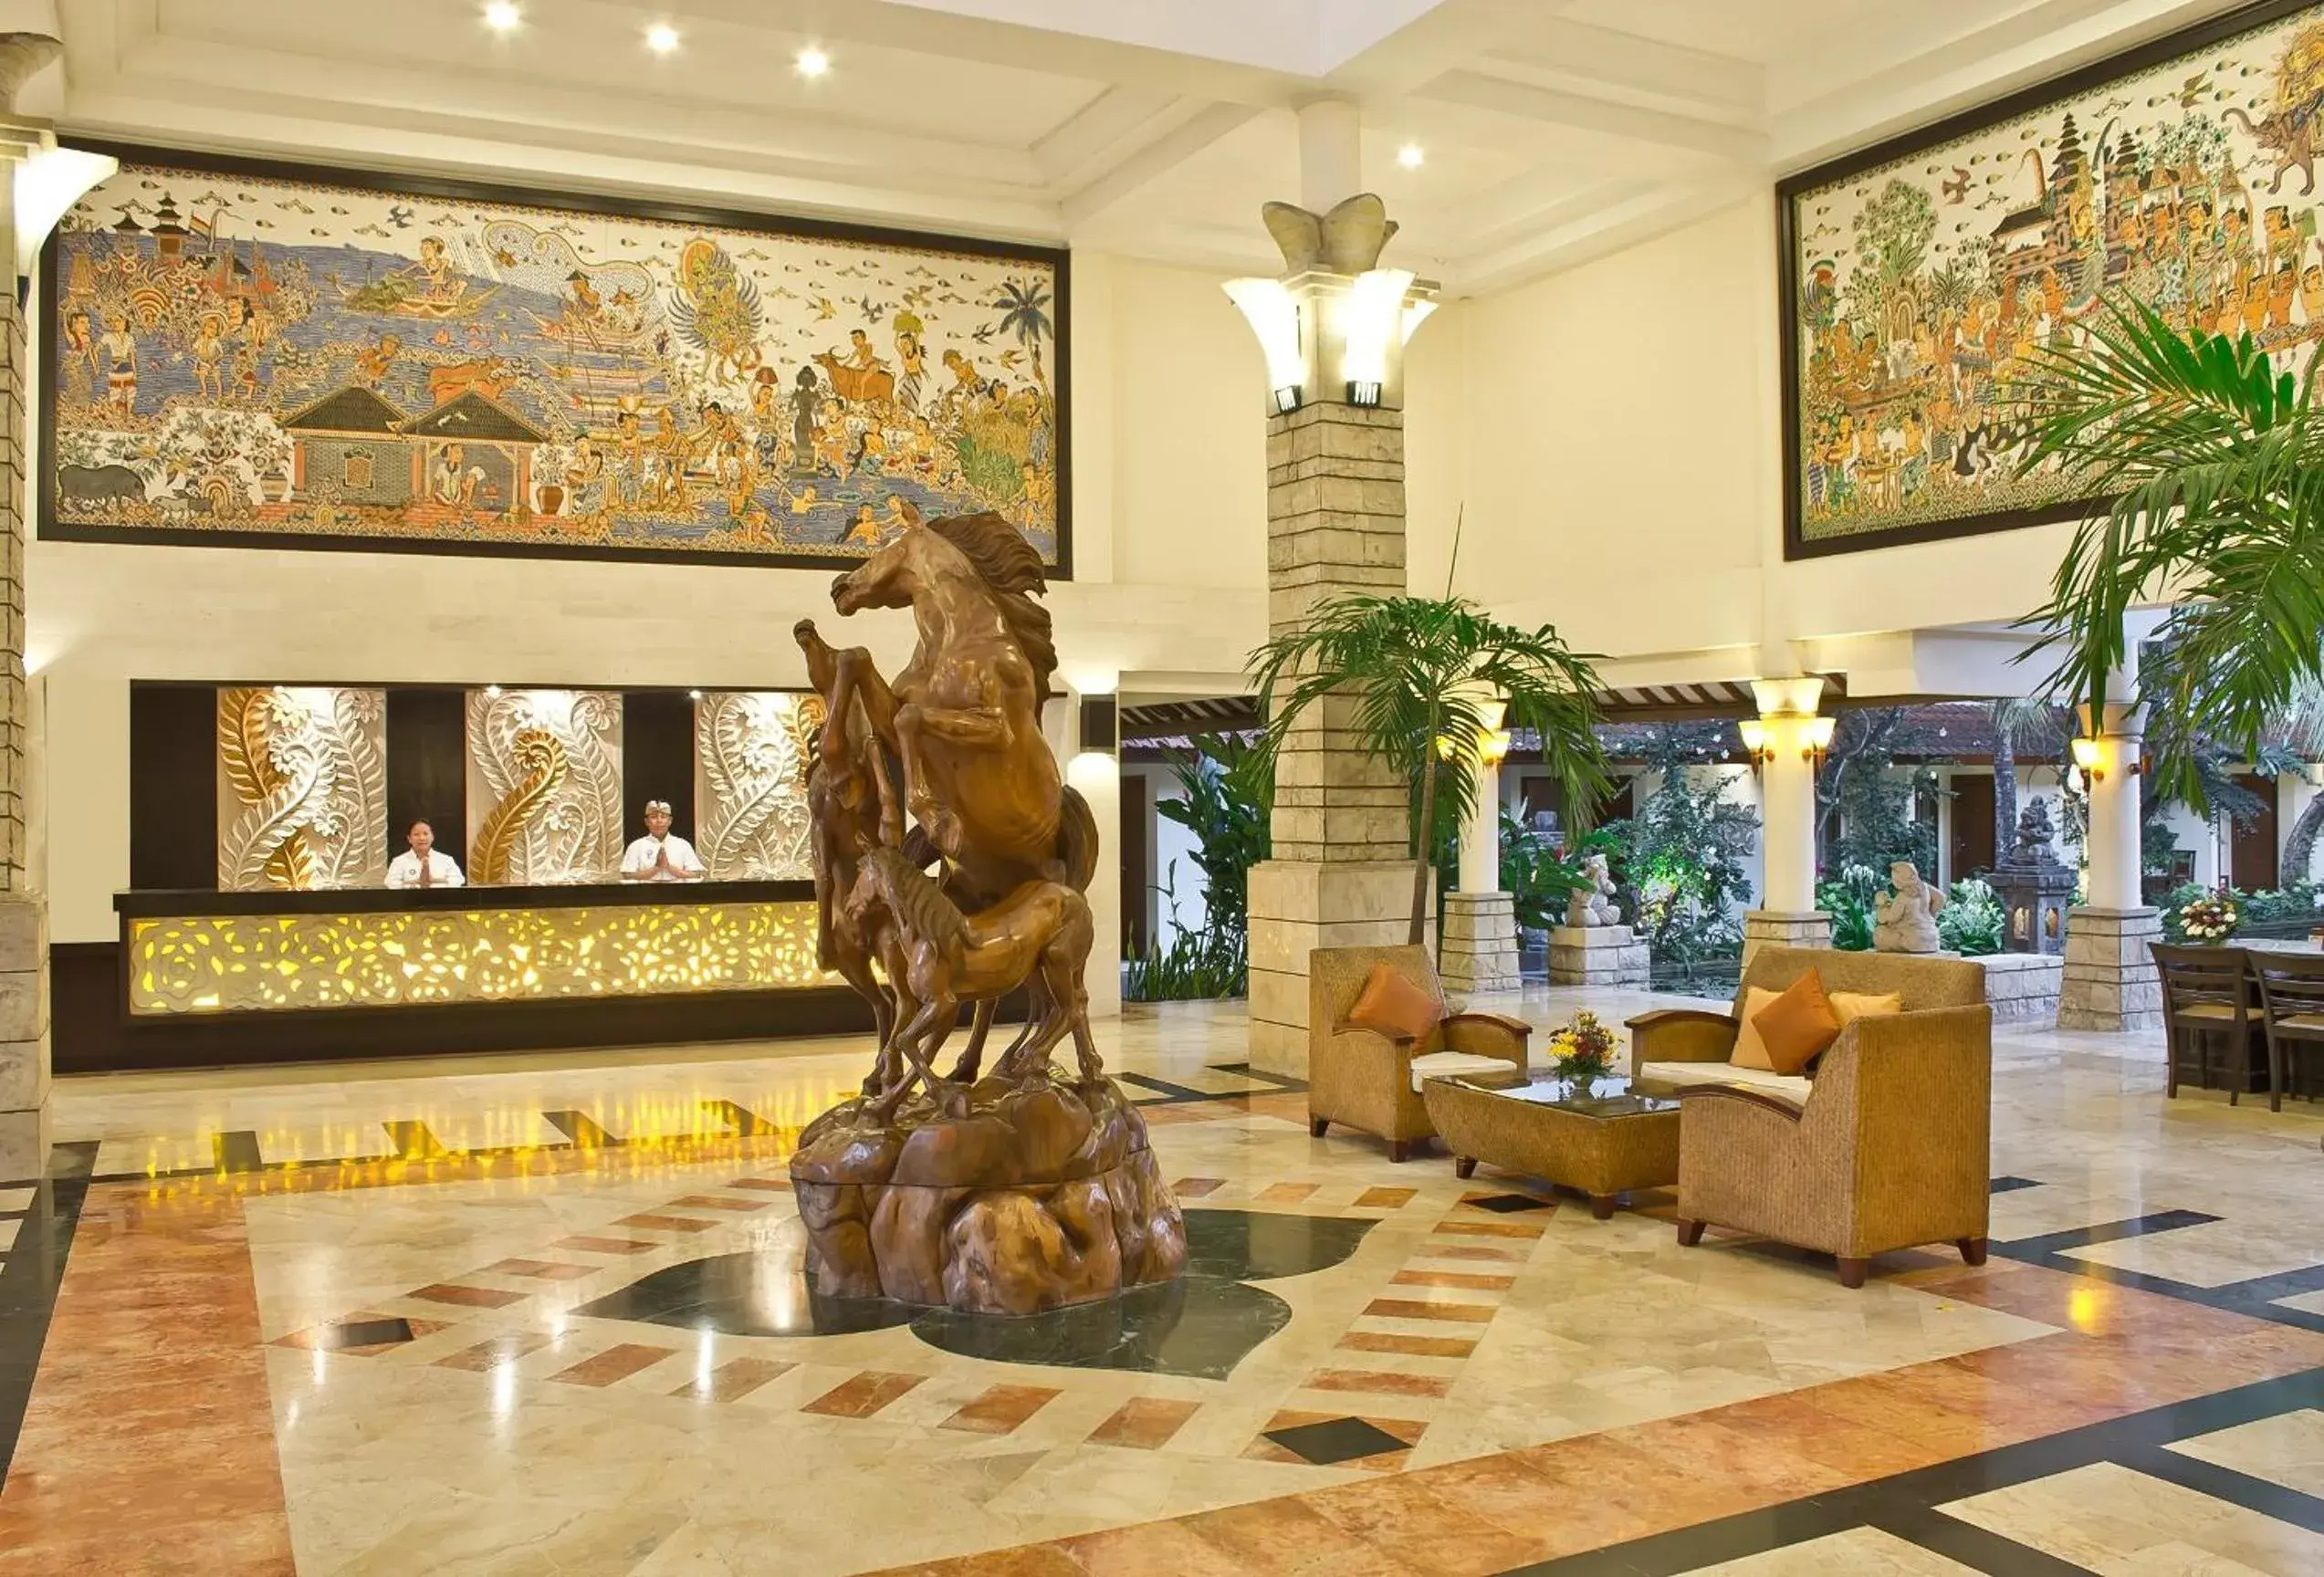 Lobby or reception, Lobby/Reception in Bali Rani Hotel